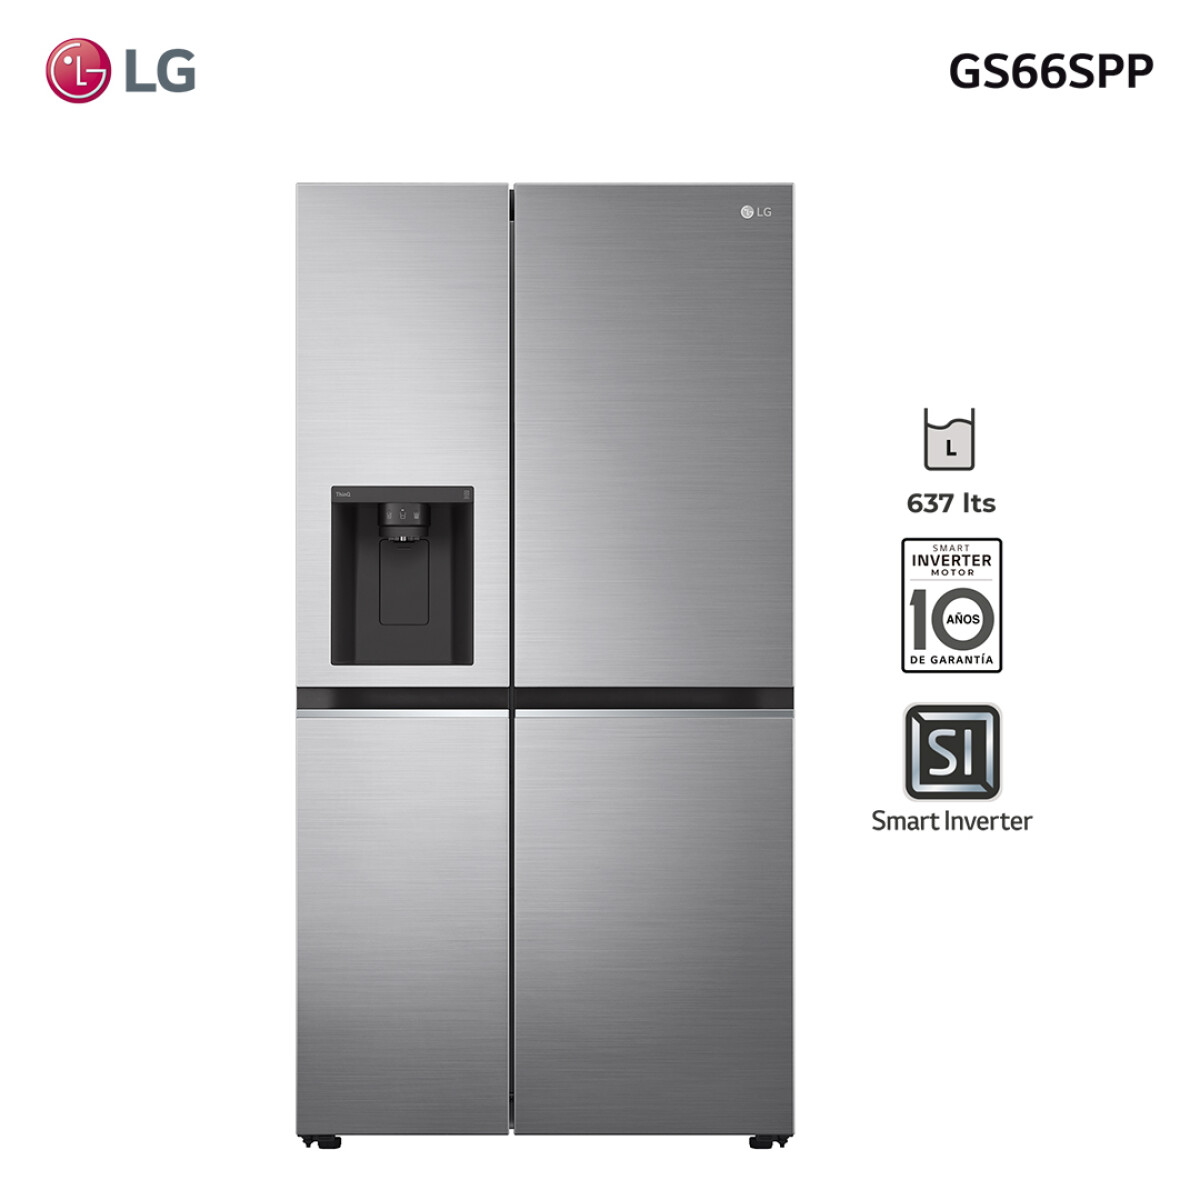 Refrigerador inverter 637L GS66SPP LG 